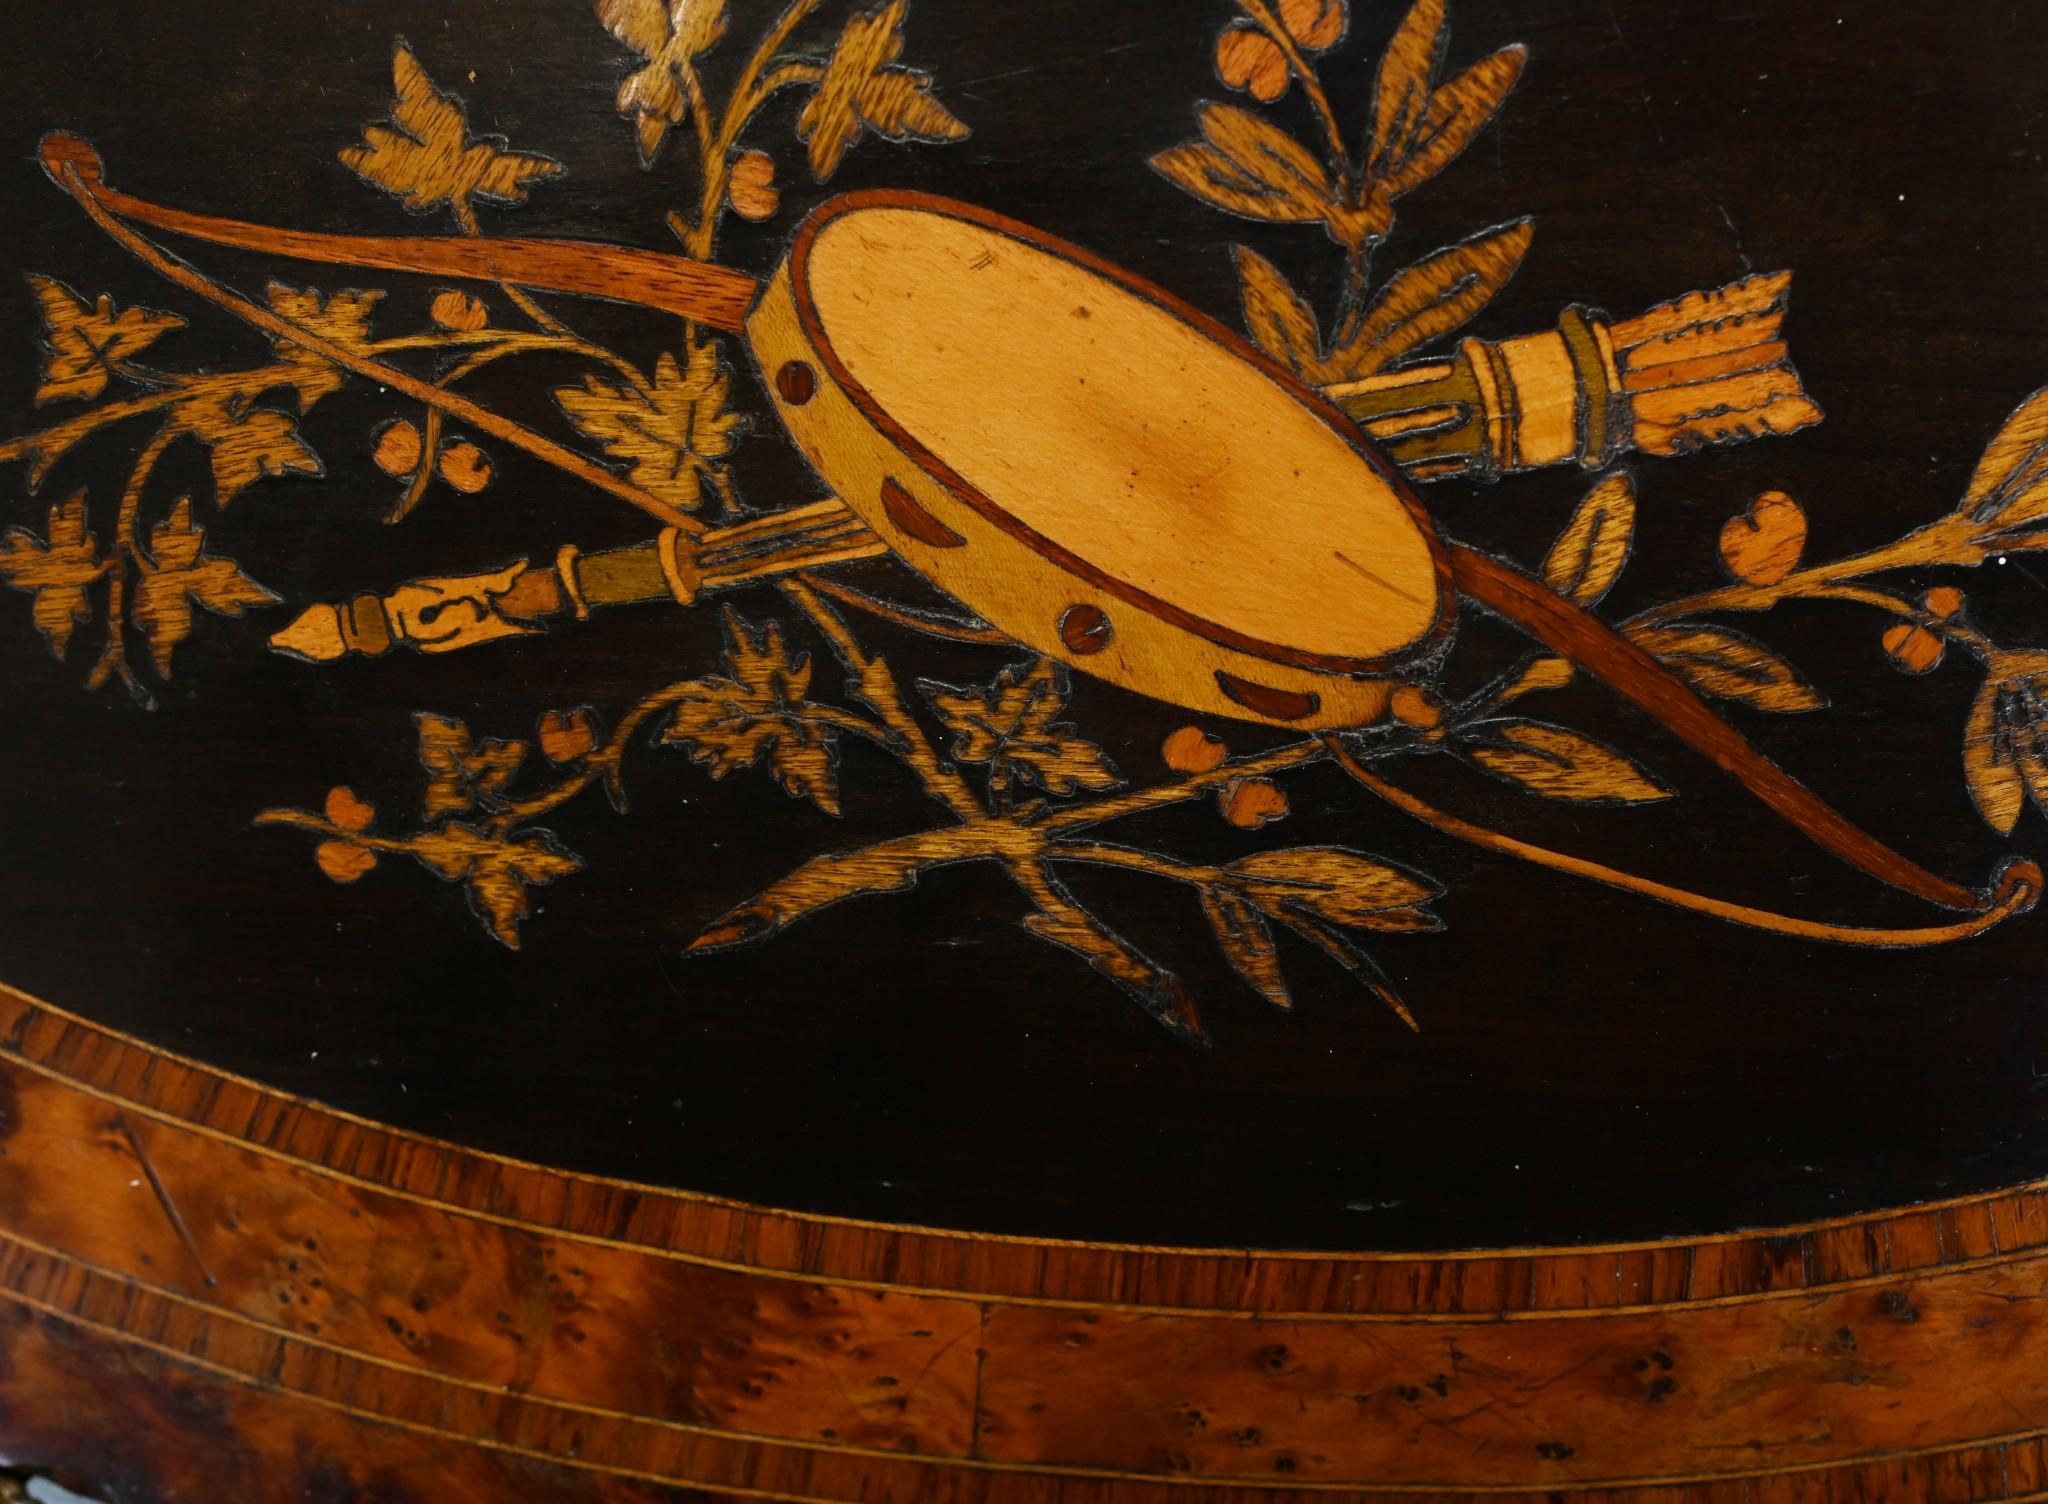 Elegant cache-pot français ancien ou table d'appoint
Fabriqué à la main en ébène et aboya avec incrustation sur le dessus.
Les luminaires en bronze doré sont d'origine.
Acheté à un marchand du Marche Biron sur les marchés d'antiquités de